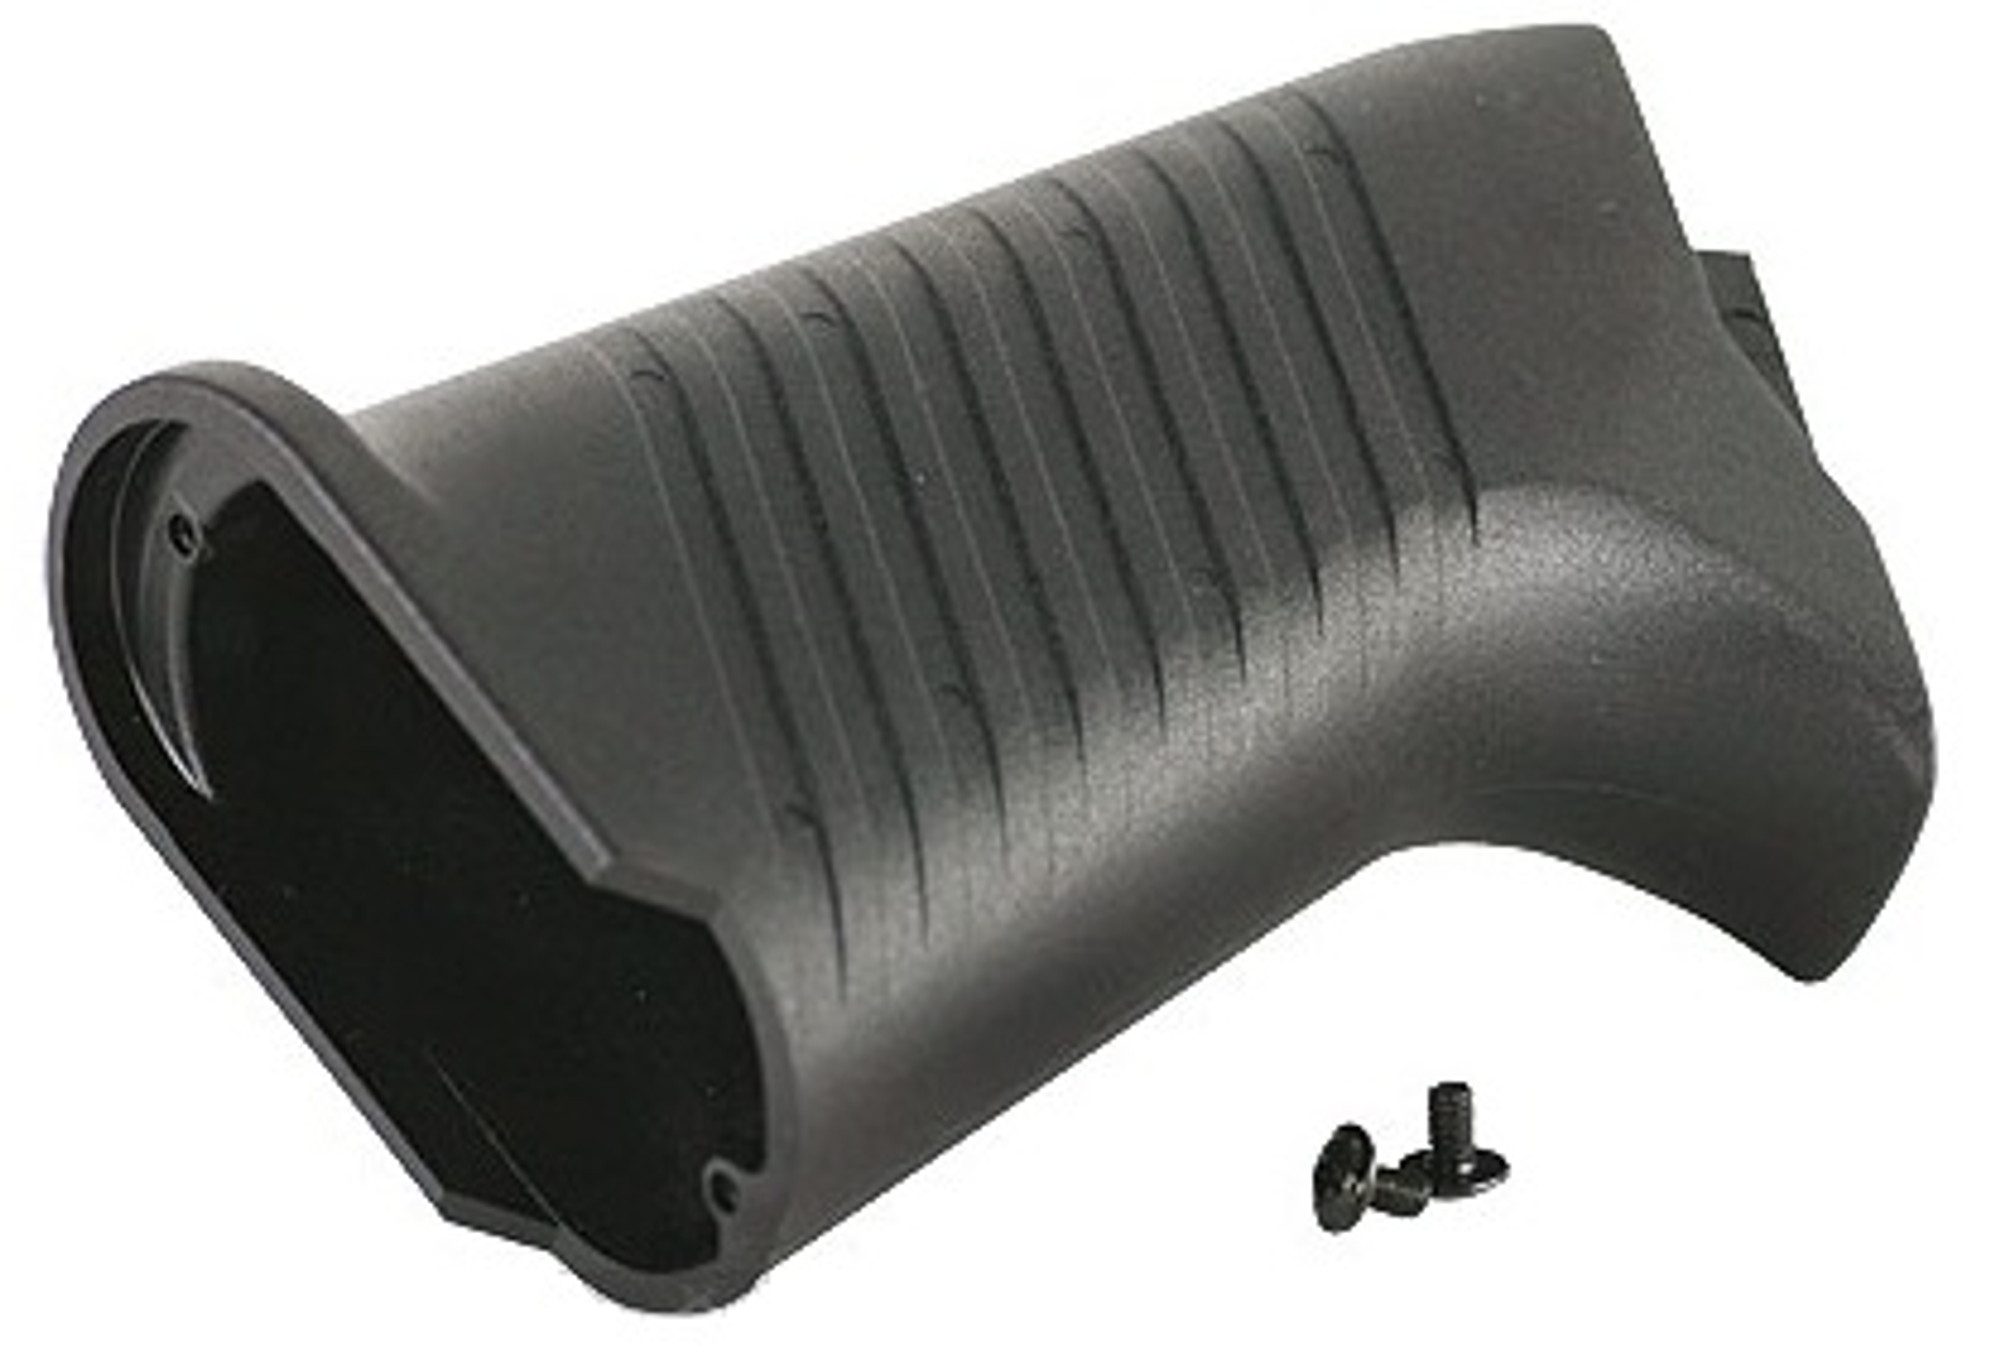 ICS Pistol Grip For SG Series Airsoft AEG Rifles